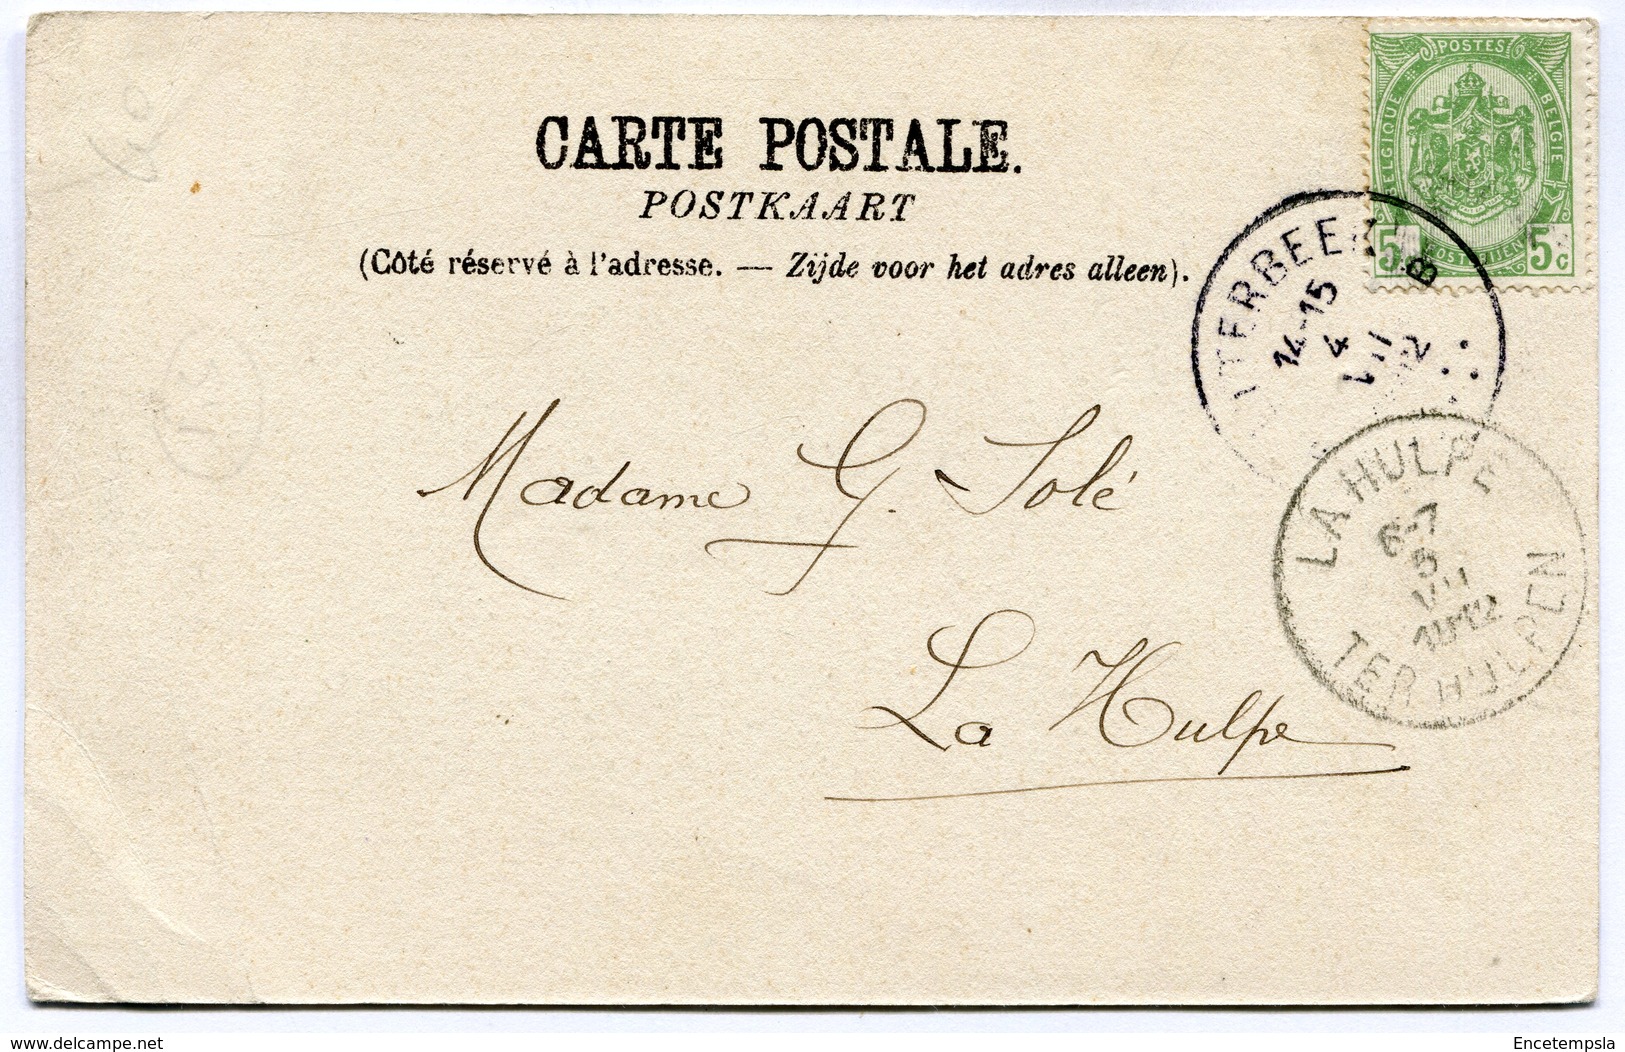 CPA - Carte Postale - Belgique - Bruxelles - Le Square Ambiorix - 1912 (SV5937) - Places, Squares